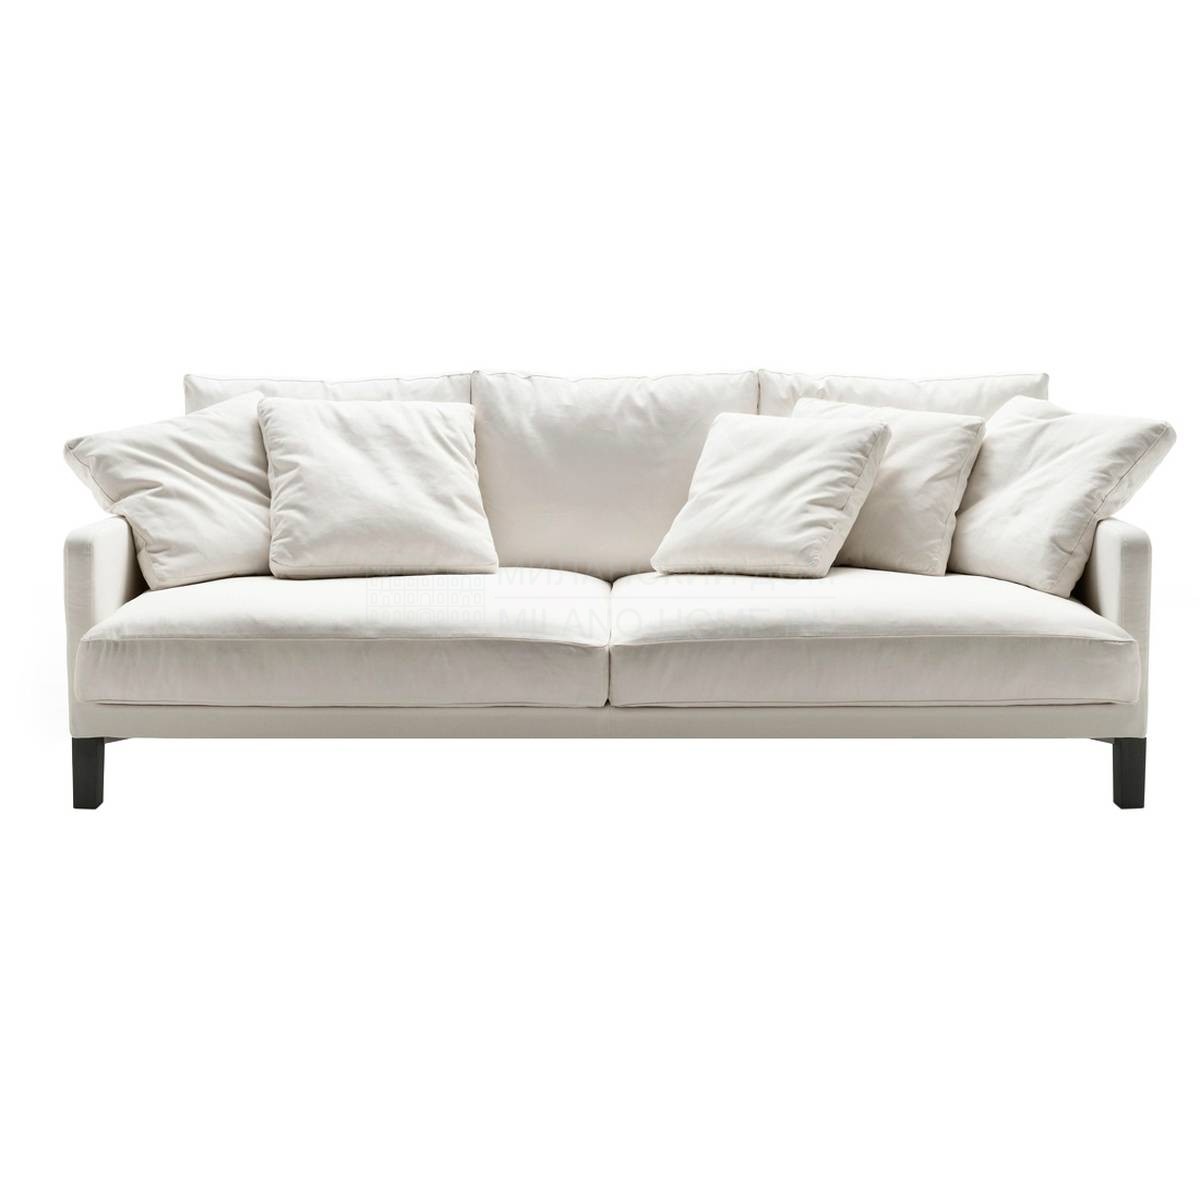 Прямой диван Dumas sofa из Италии фабрики LIVING DIVANI